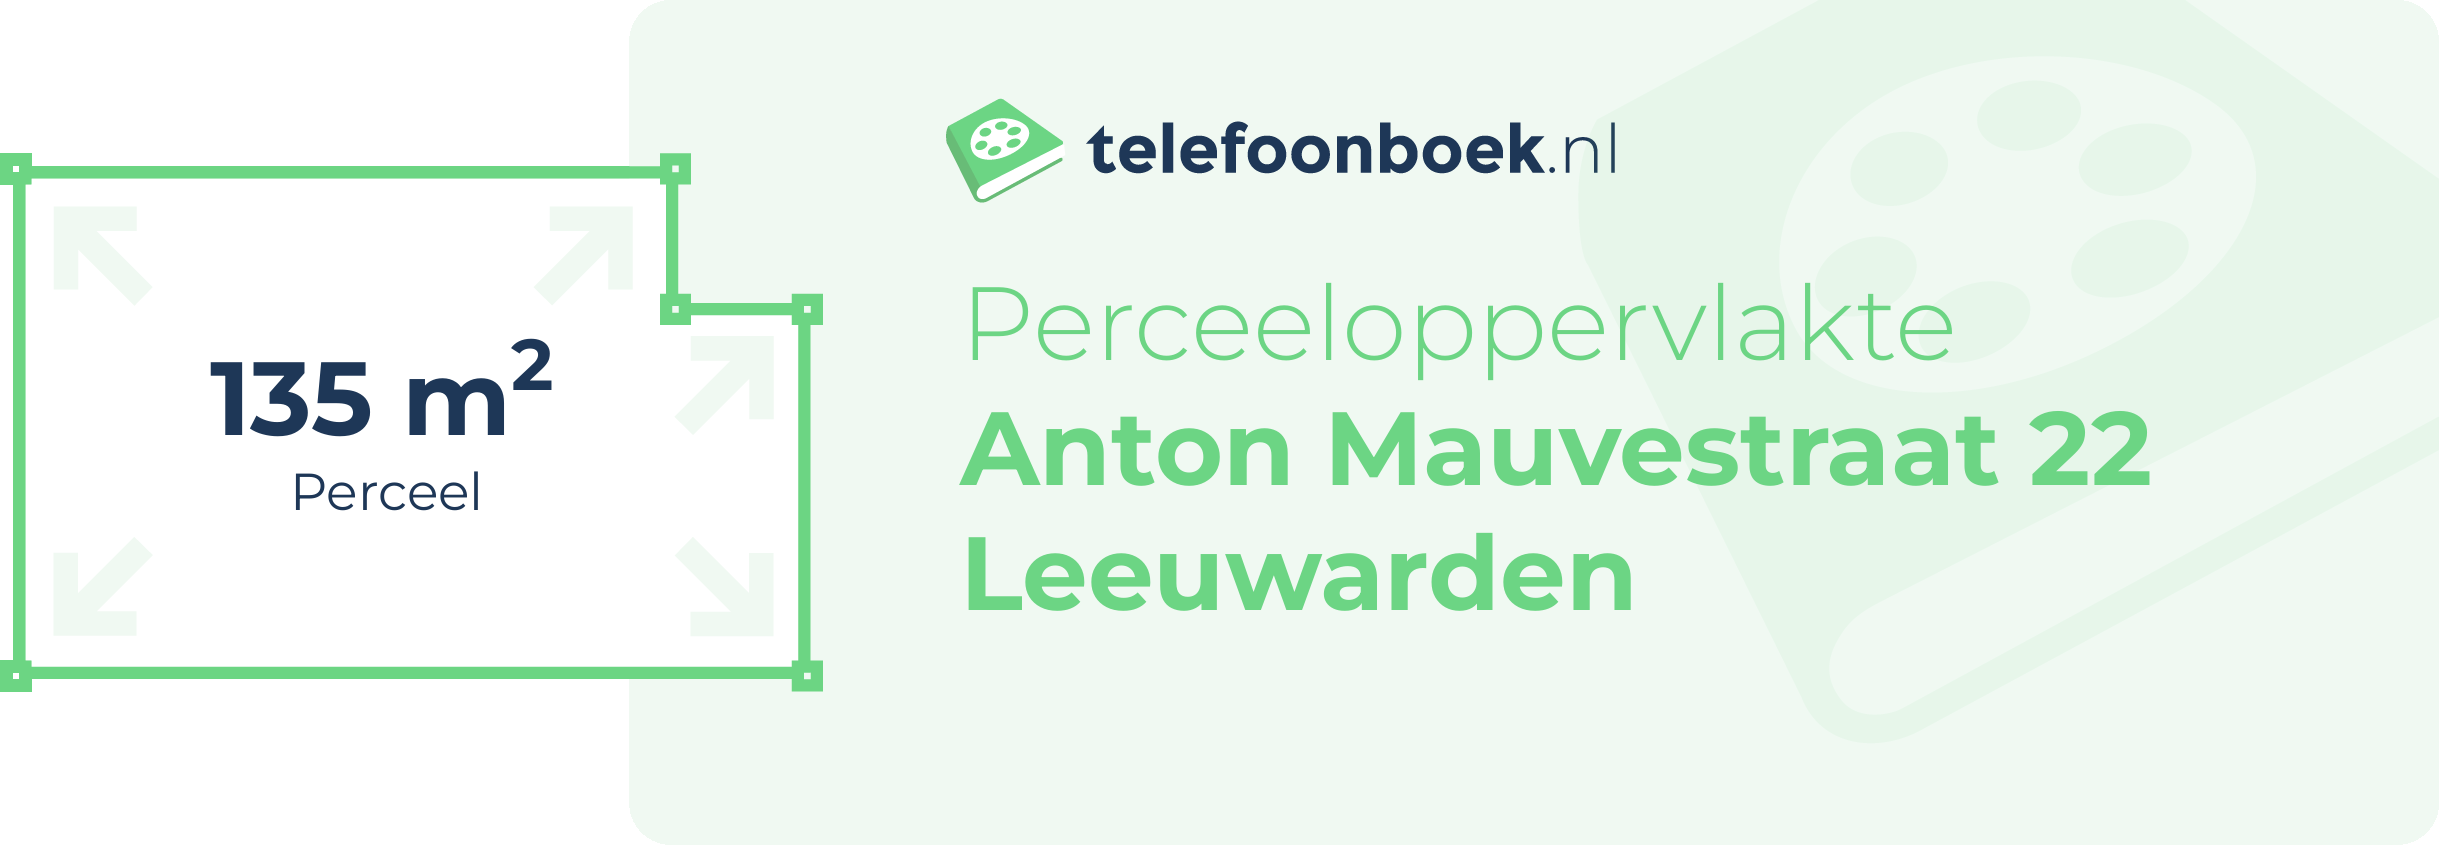 Perceeloppervlakte Anton Mauvestraat 22 Leeuwarden